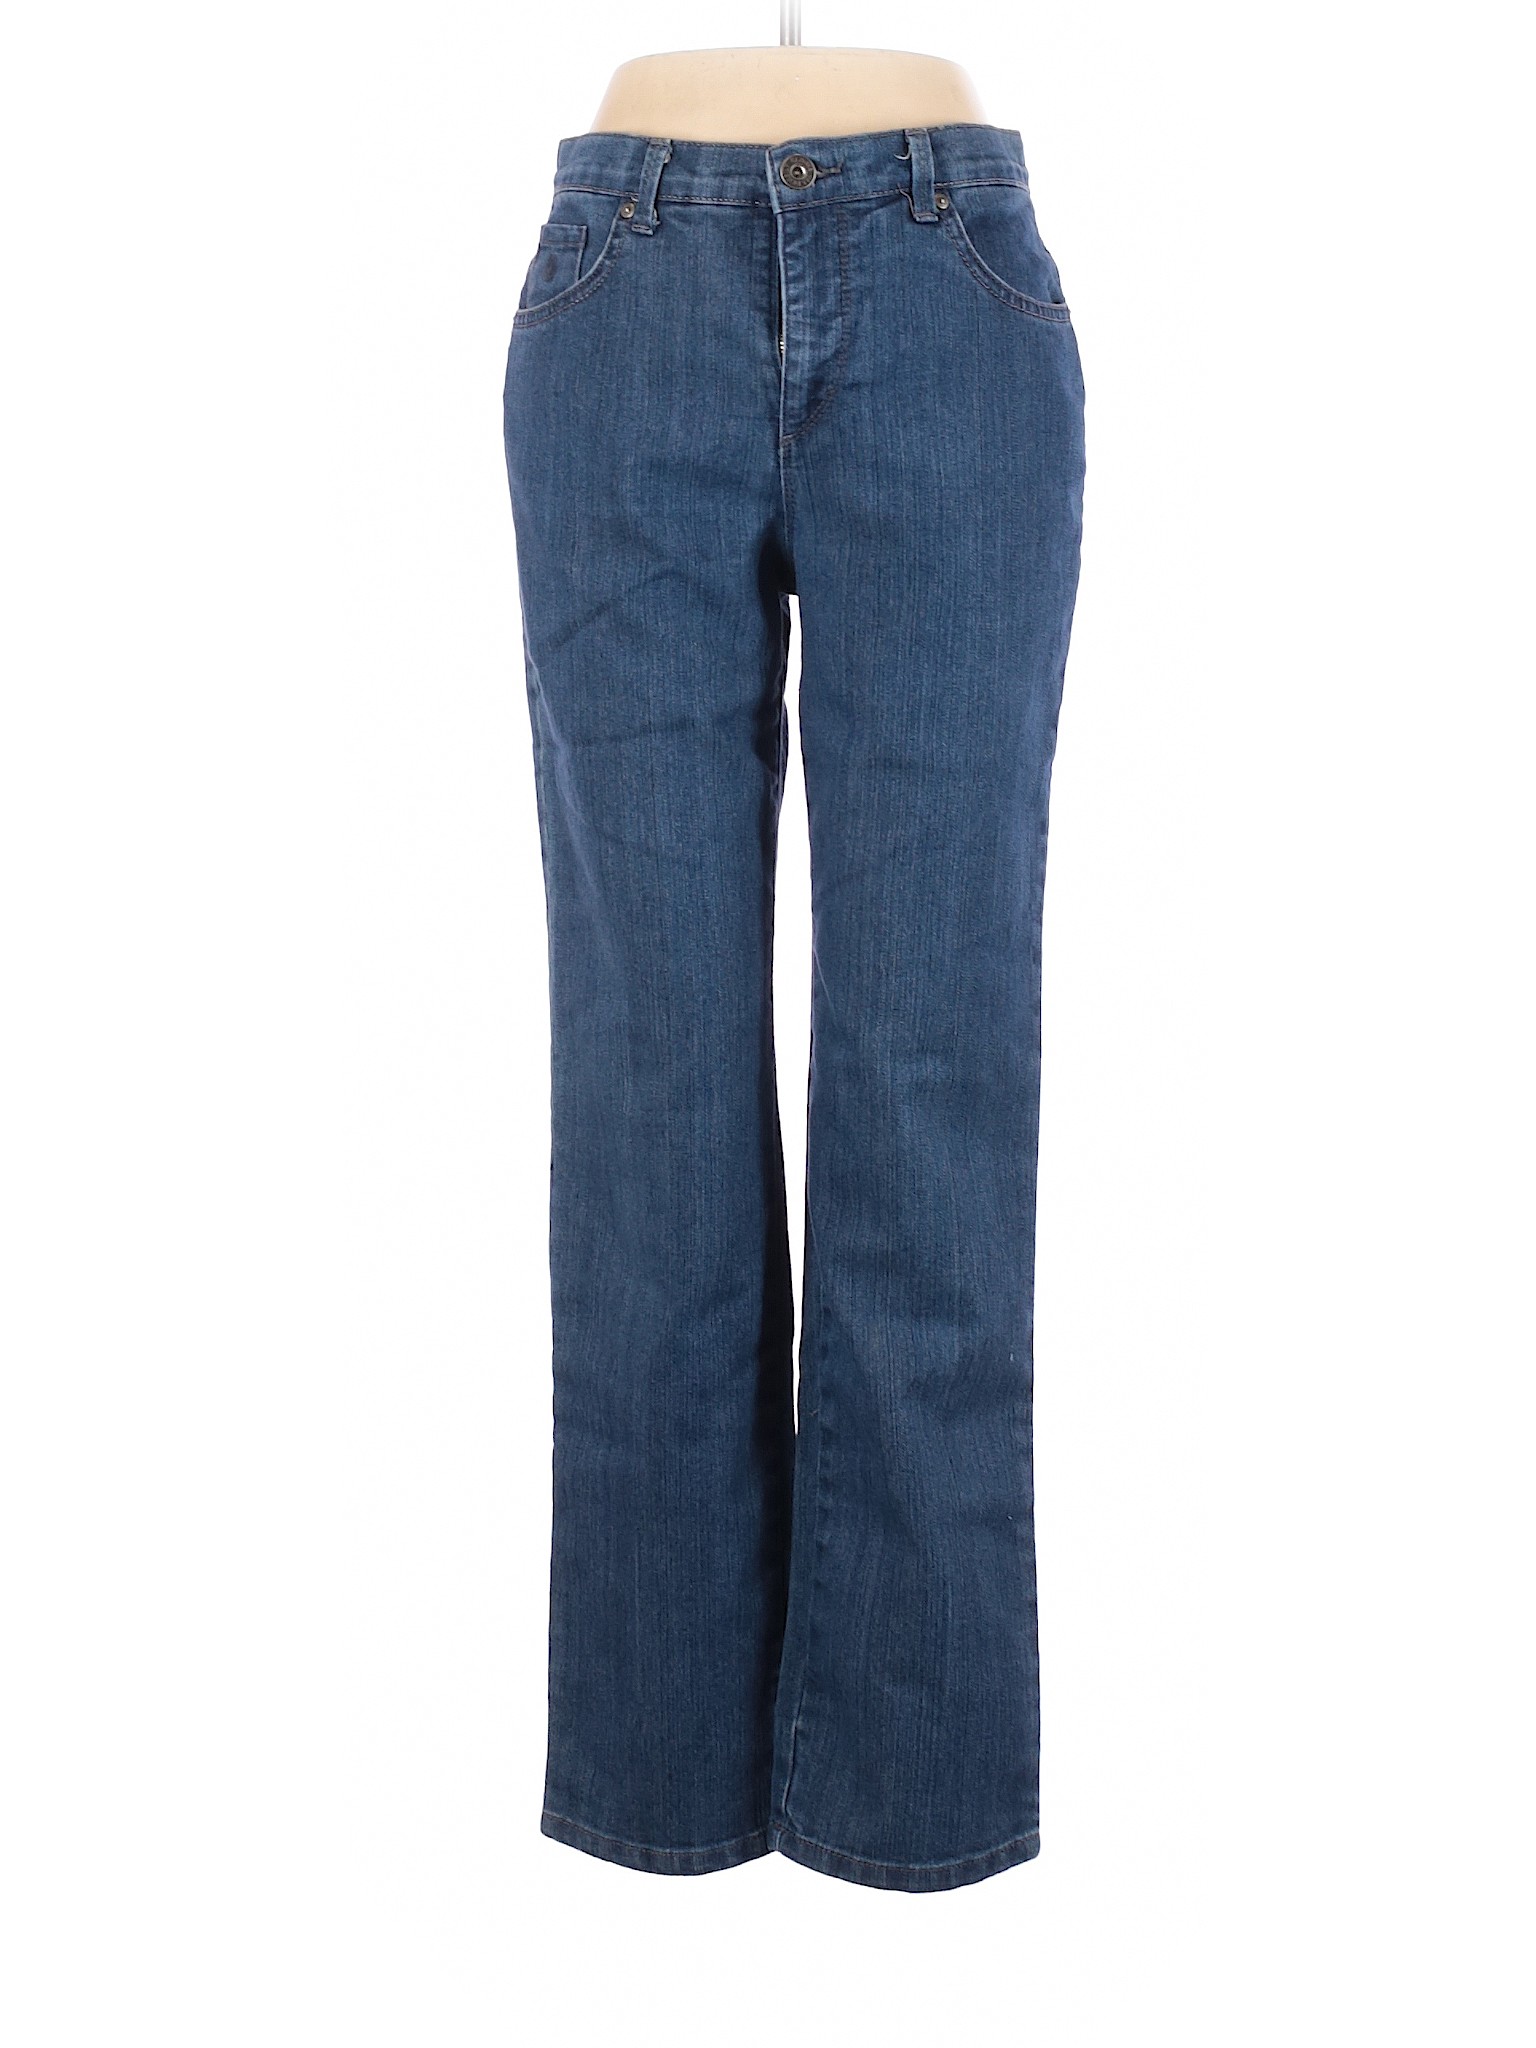 Gloria Vanderbilt Women Blue Jeans 6 | eBay